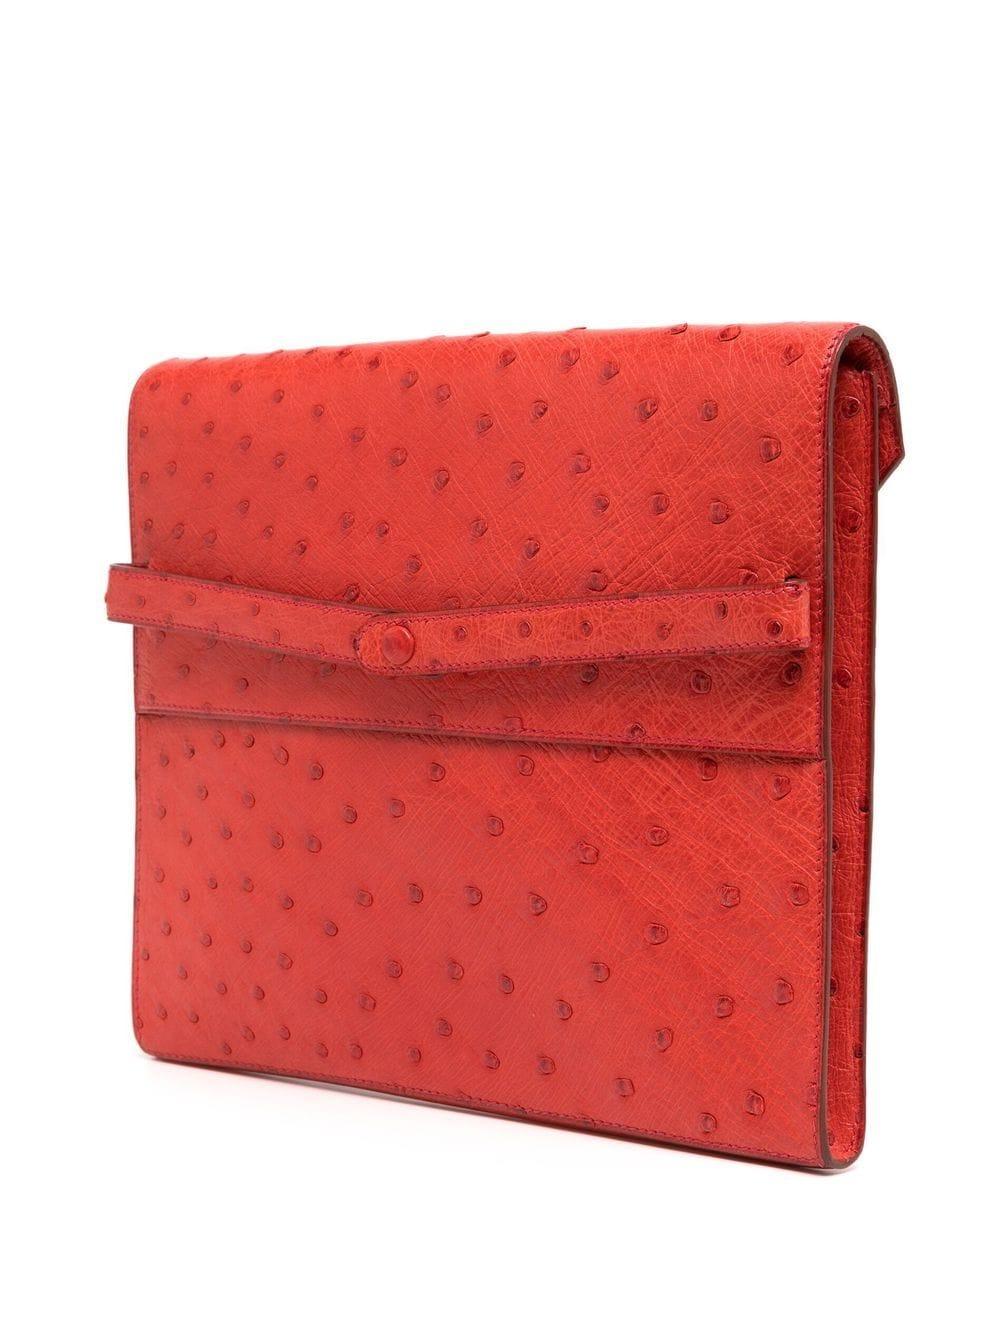 La pochette Liddy en autruche rouge est un modèle intemporel et élégant, aux lignes minimales et nettes, avec la prédilection d'Hermès pour les couleurs vives. Fabriquée en cuir marbré dans une teinte rouge vif, cette pochette rare et convoitée est